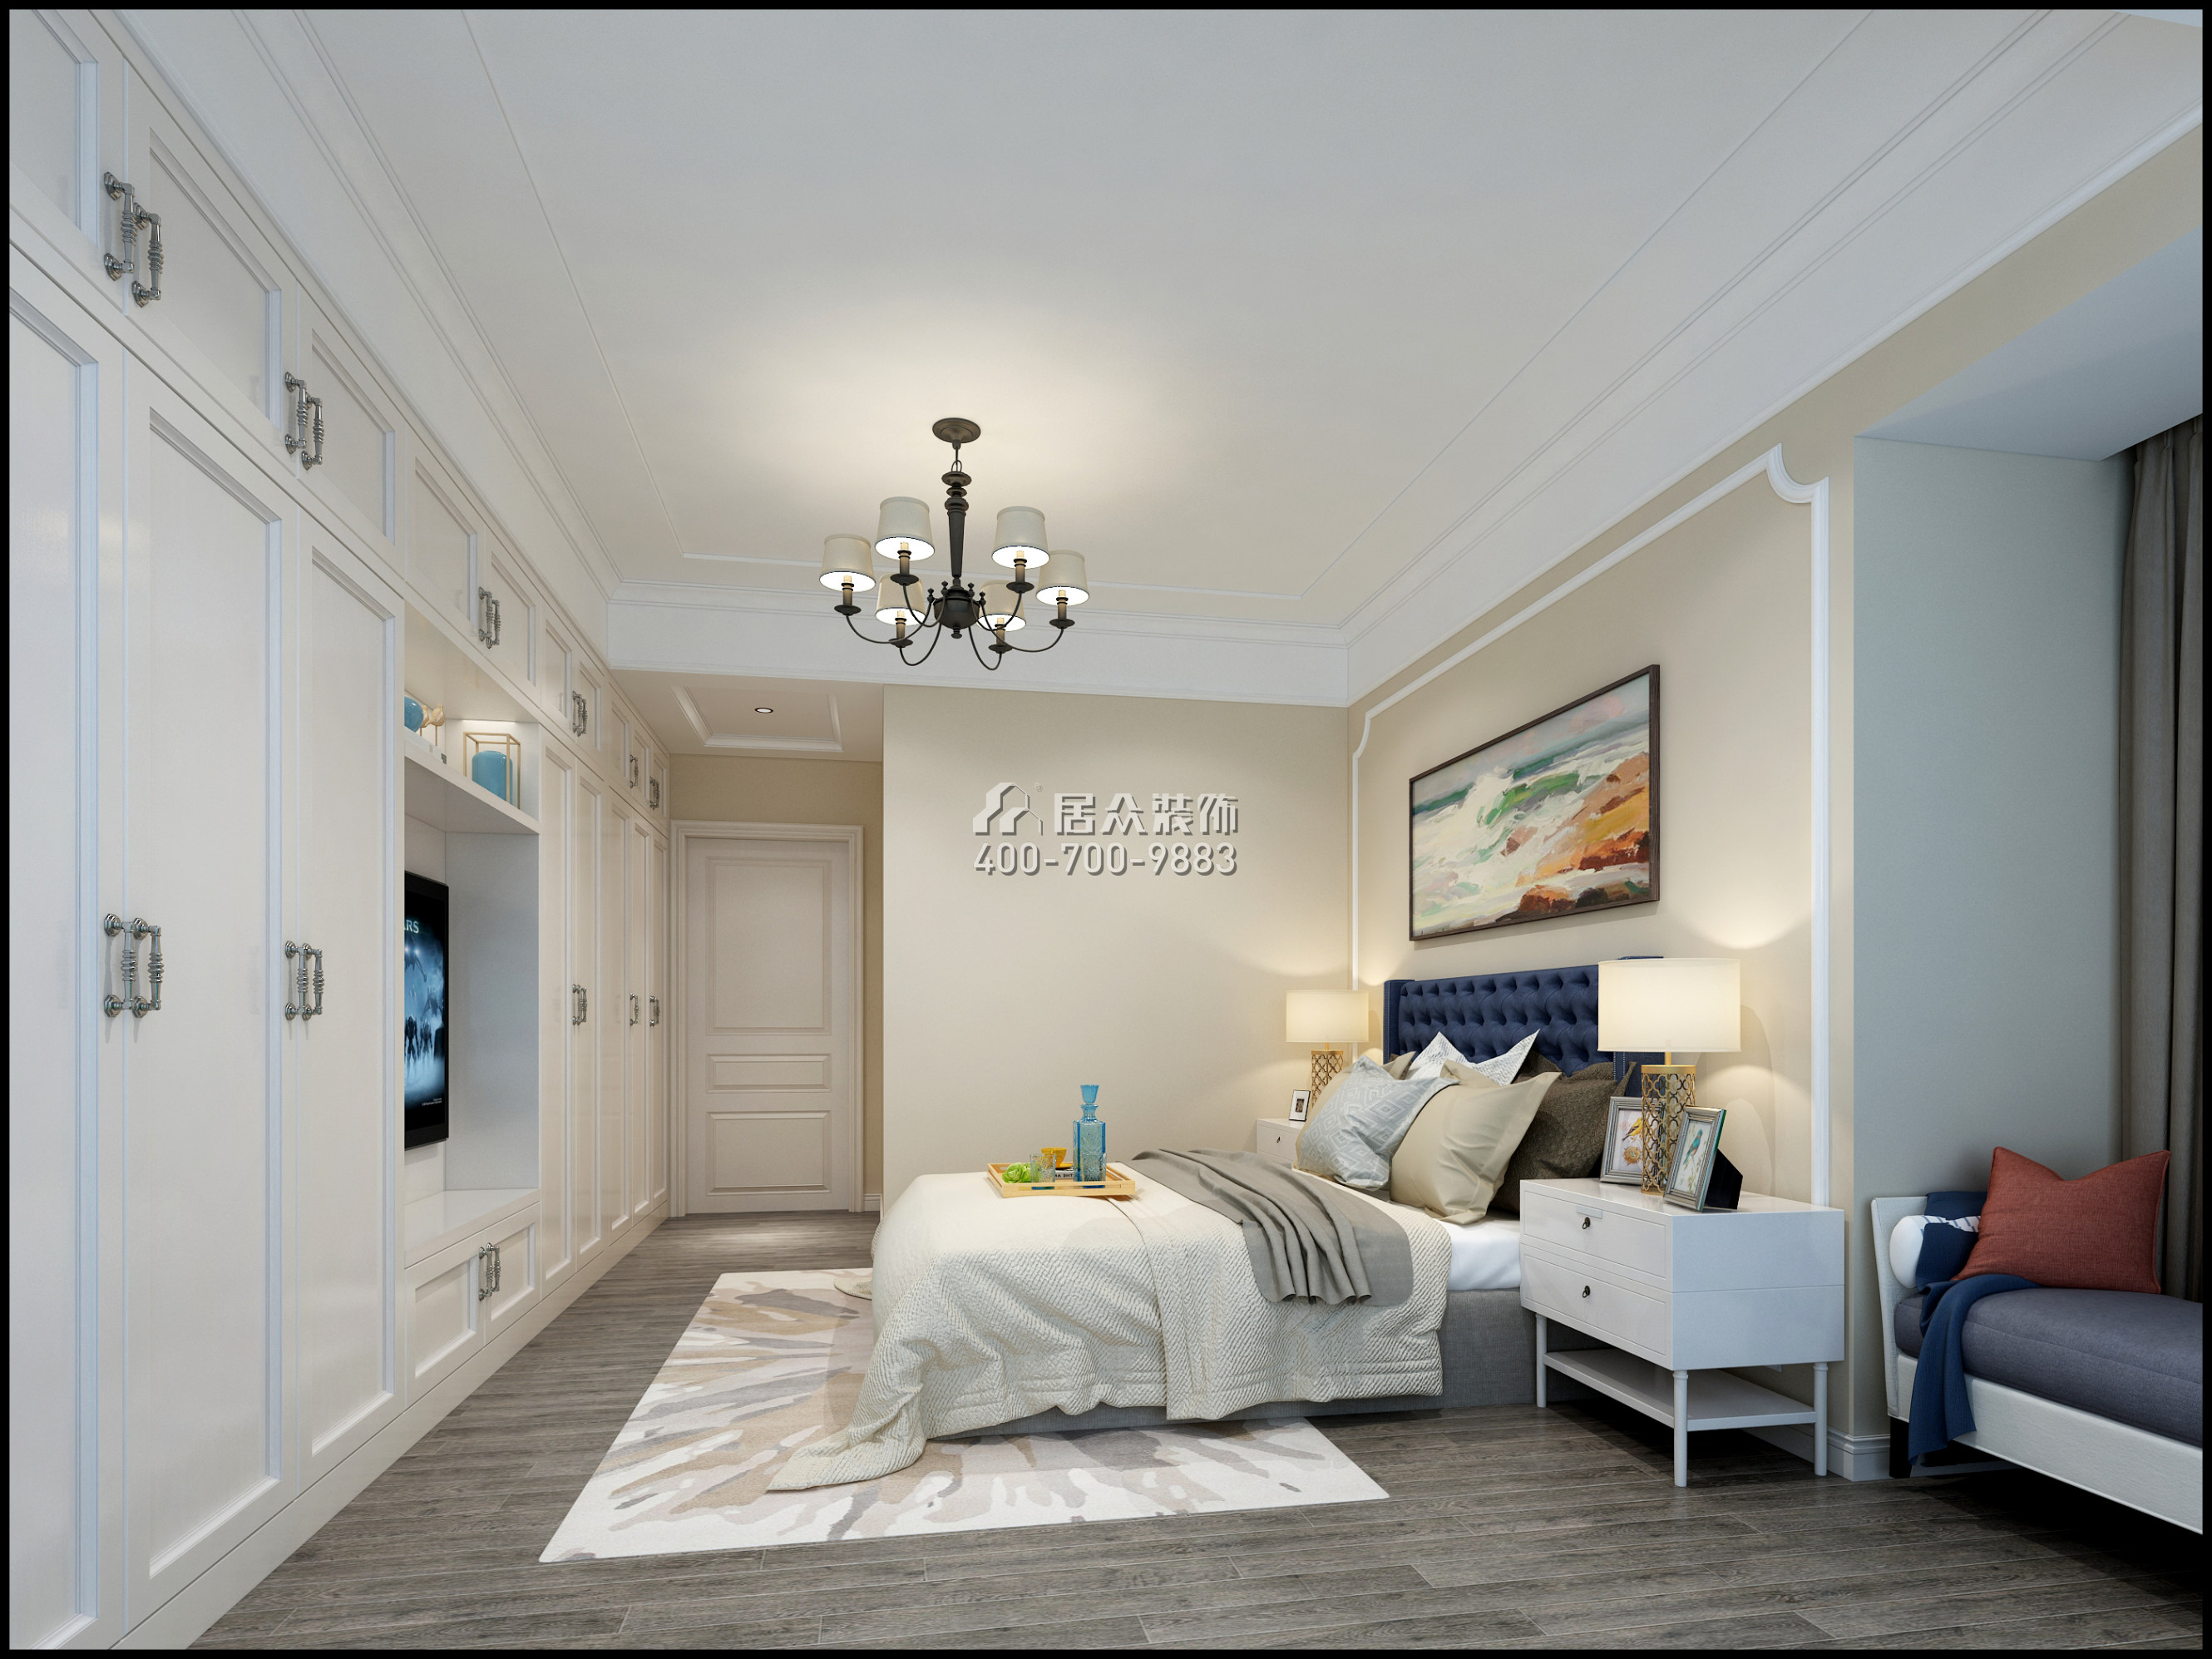 仁山智水花园一期157平方米美式风格平层户型卧室装修效果图